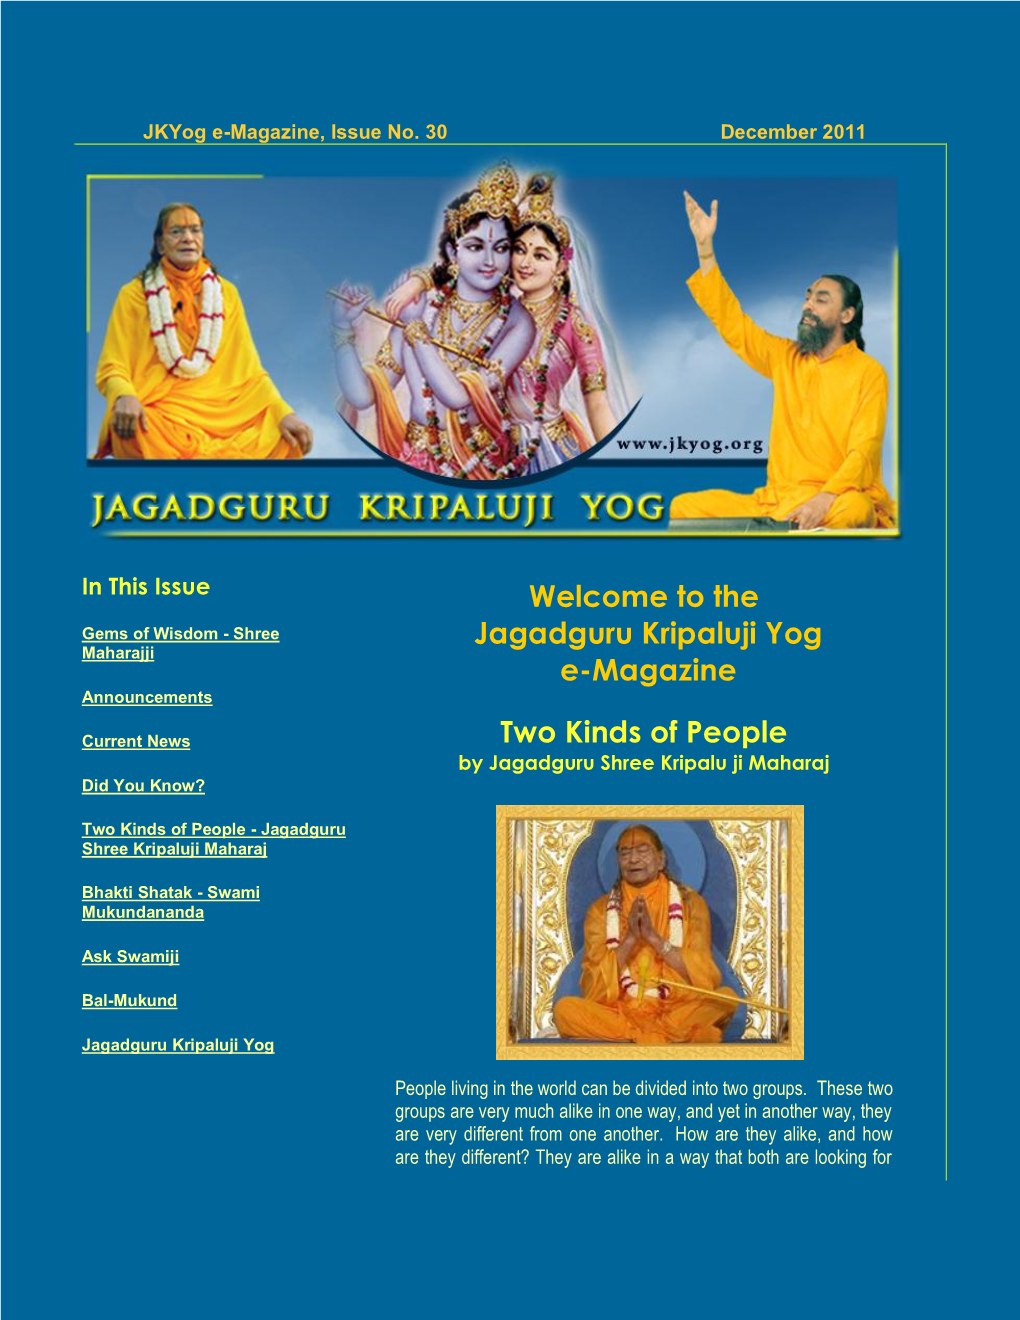 Jagadguru Kripaluji Yog E-Magazine